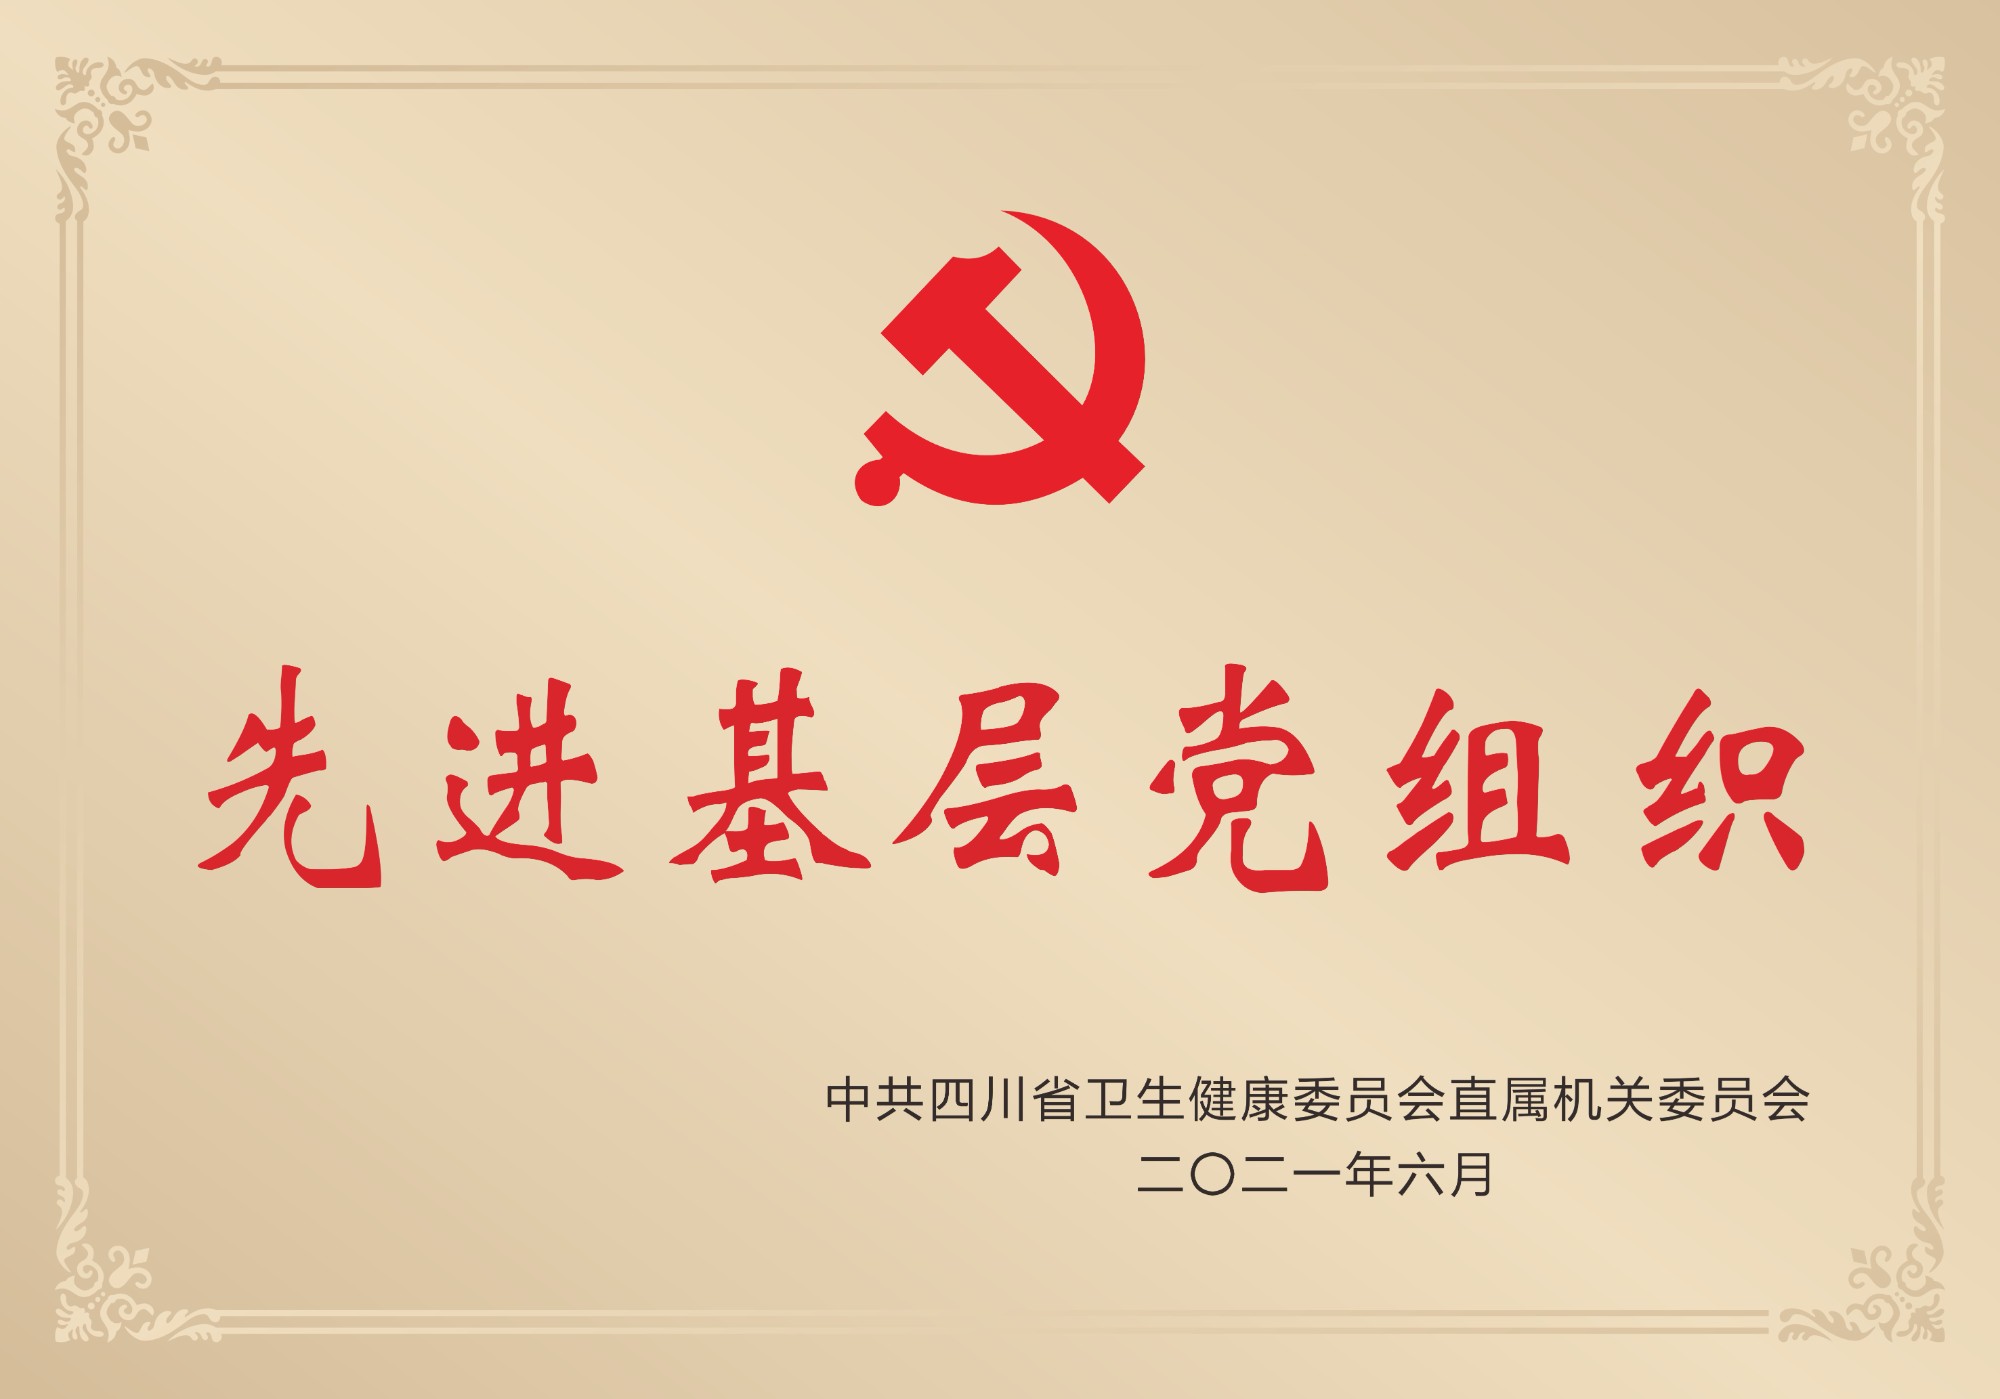 2021年榮獲中共四川省衛生健康委員會直屬機關委員會頒發的“先進基層黨組織”稱號